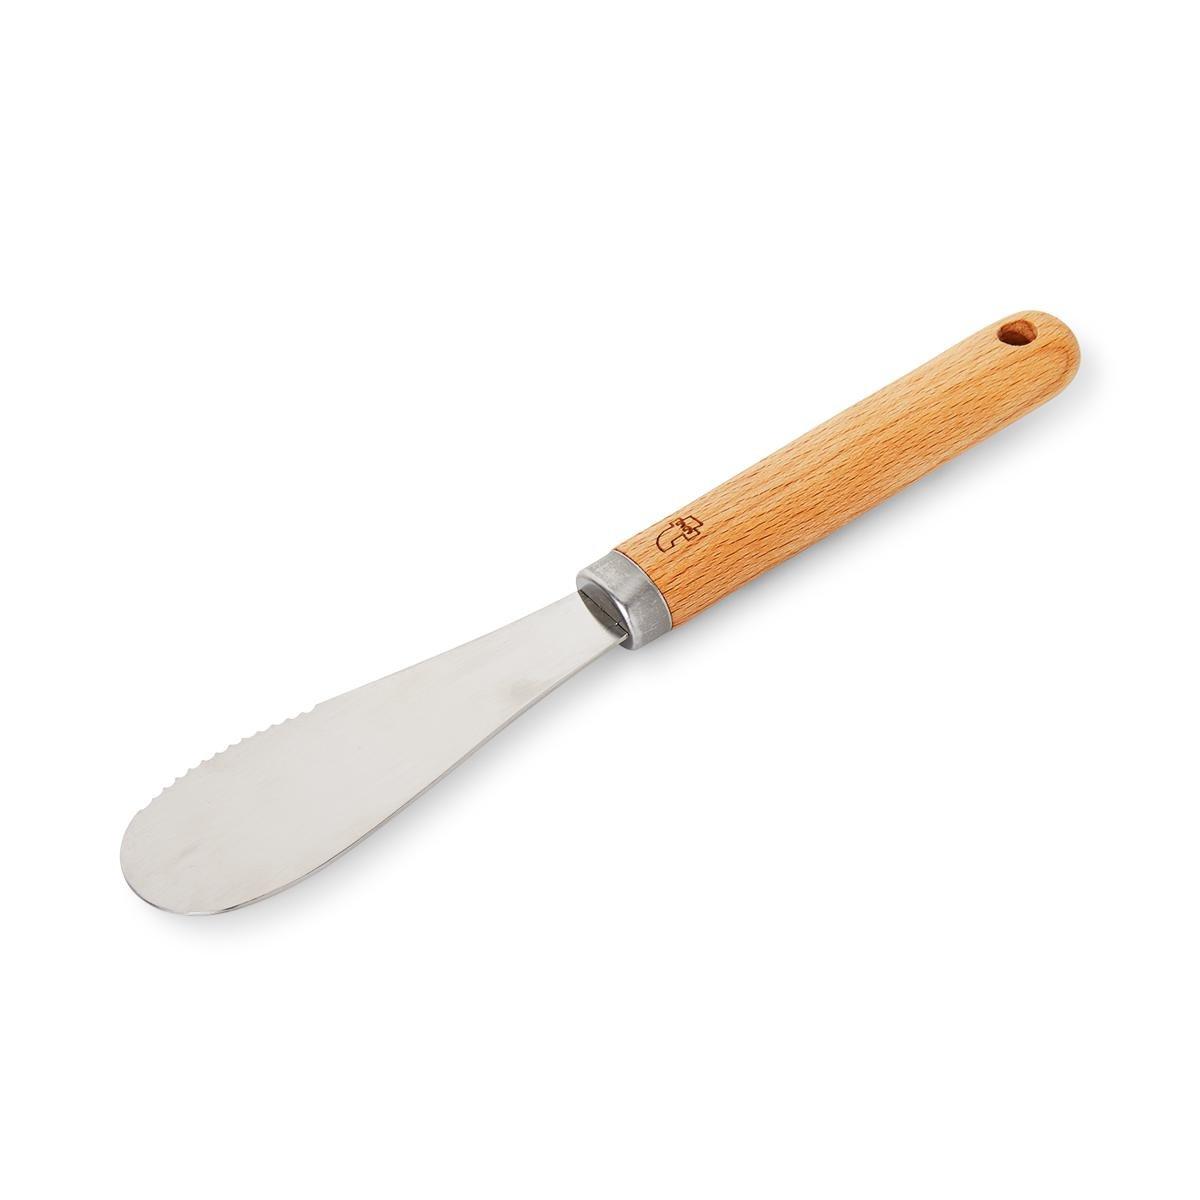 Steel butter knife